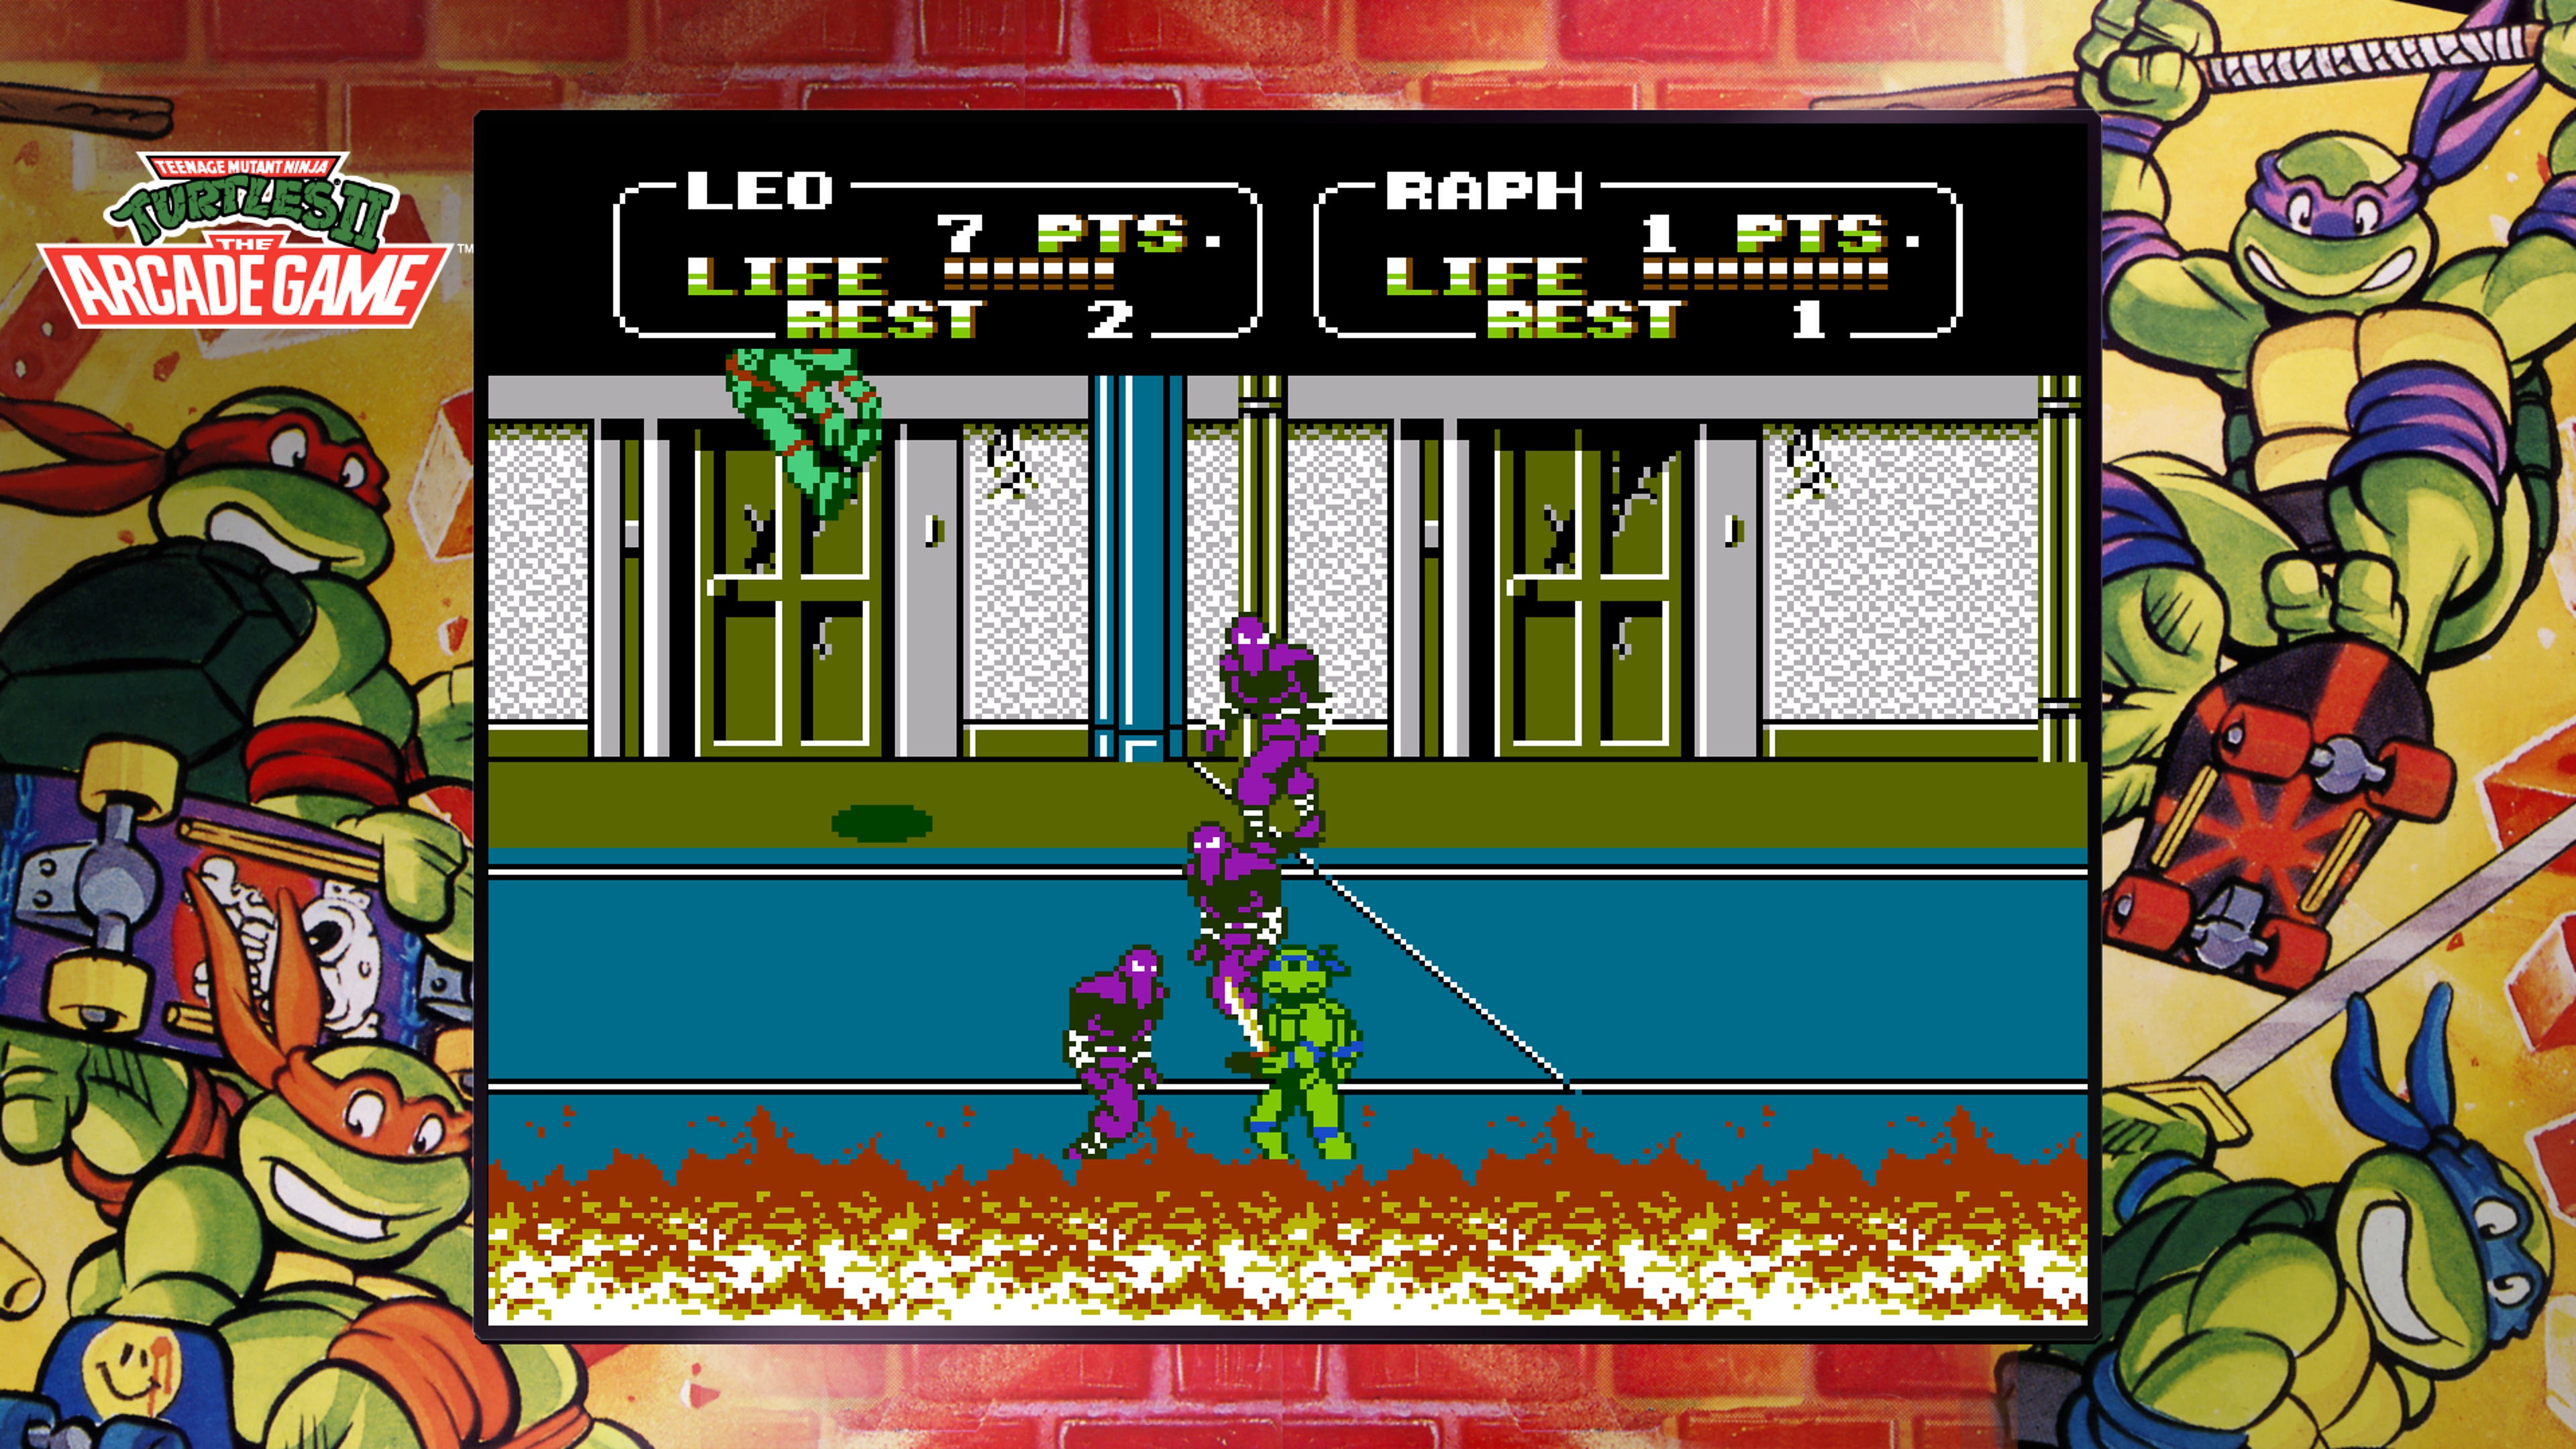 『Teenage Mutant Ninja Turtles Collection - The Arcade Game』でフットクランと戦うレオナルドのスクリーンショット